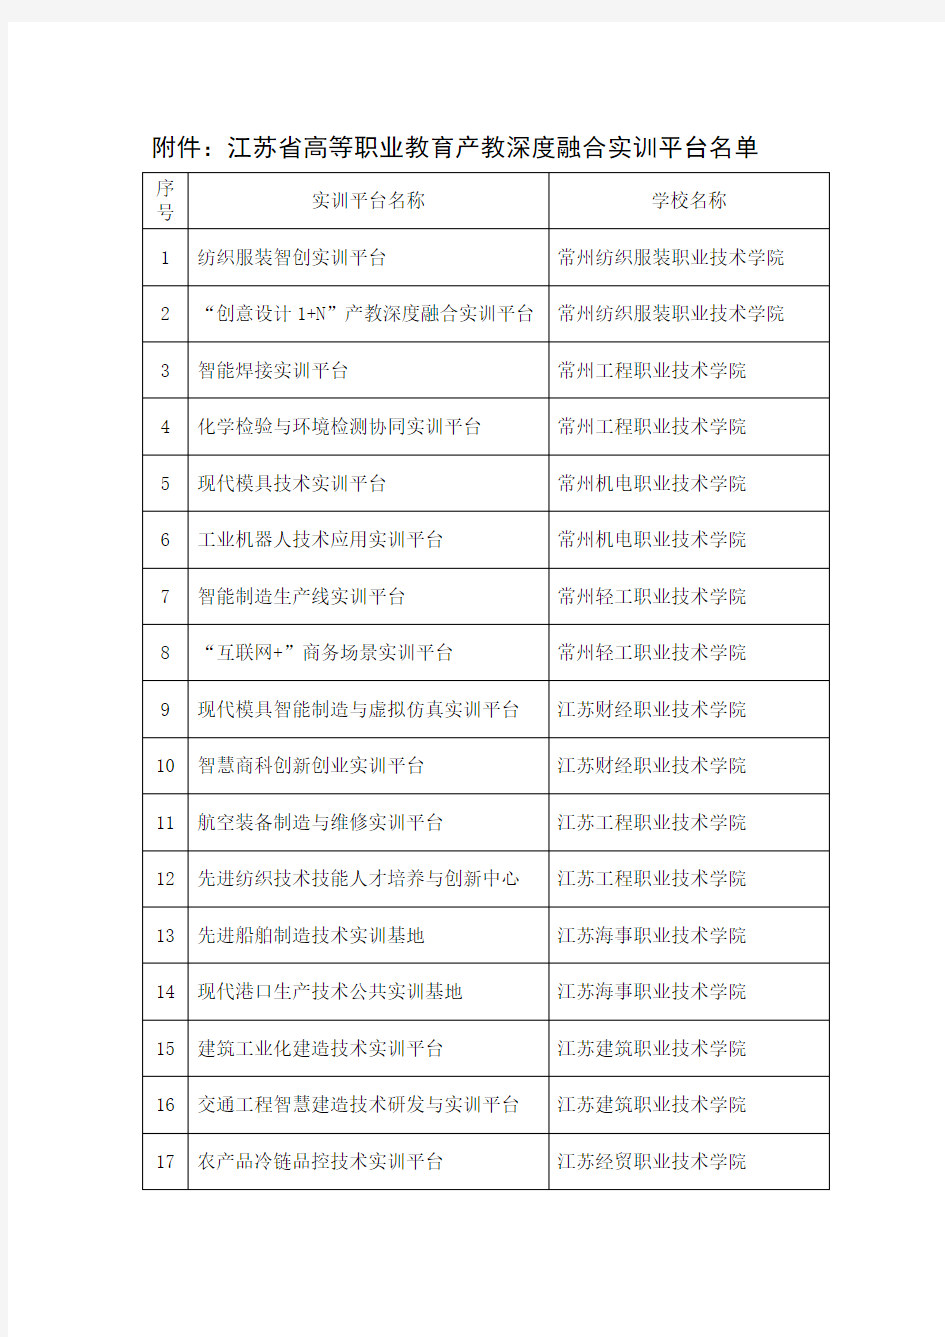 江苏省高等职业教育产教深度融合实训平台名单